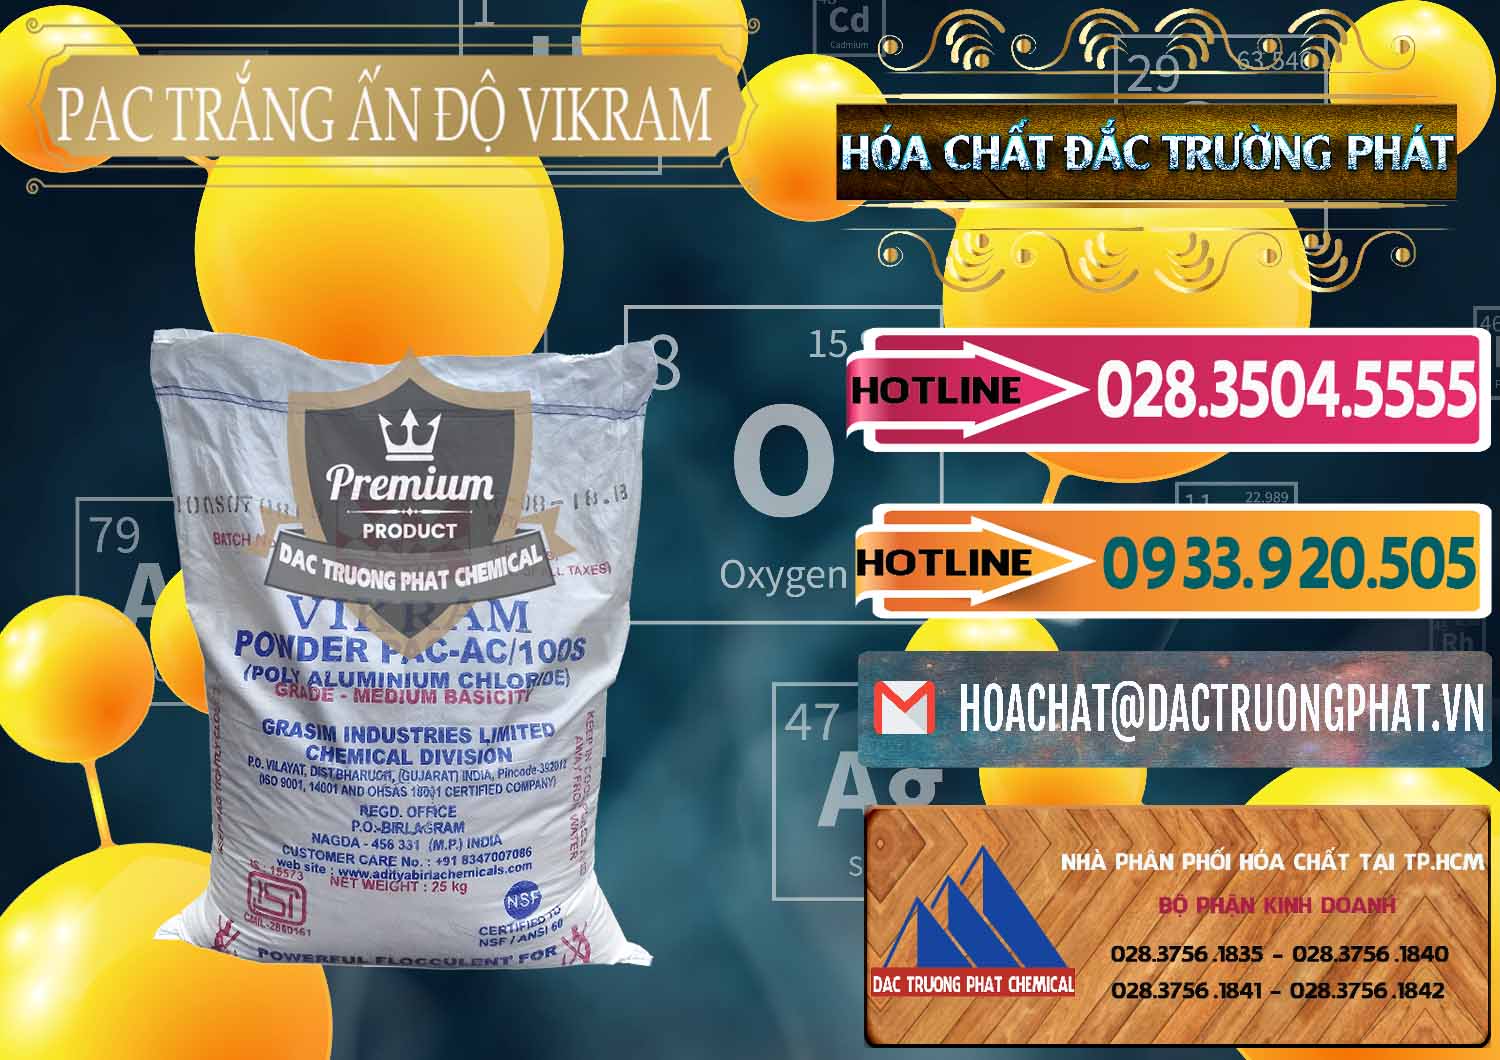 Công ty chuyên bán ( cung cấp ) PAC - Polyaluminium Chloride Ấn Độ India Vikram - 0120 - Kinh doanh - phân phối hóa chất tại TP.HCM - dactruongphat.vn